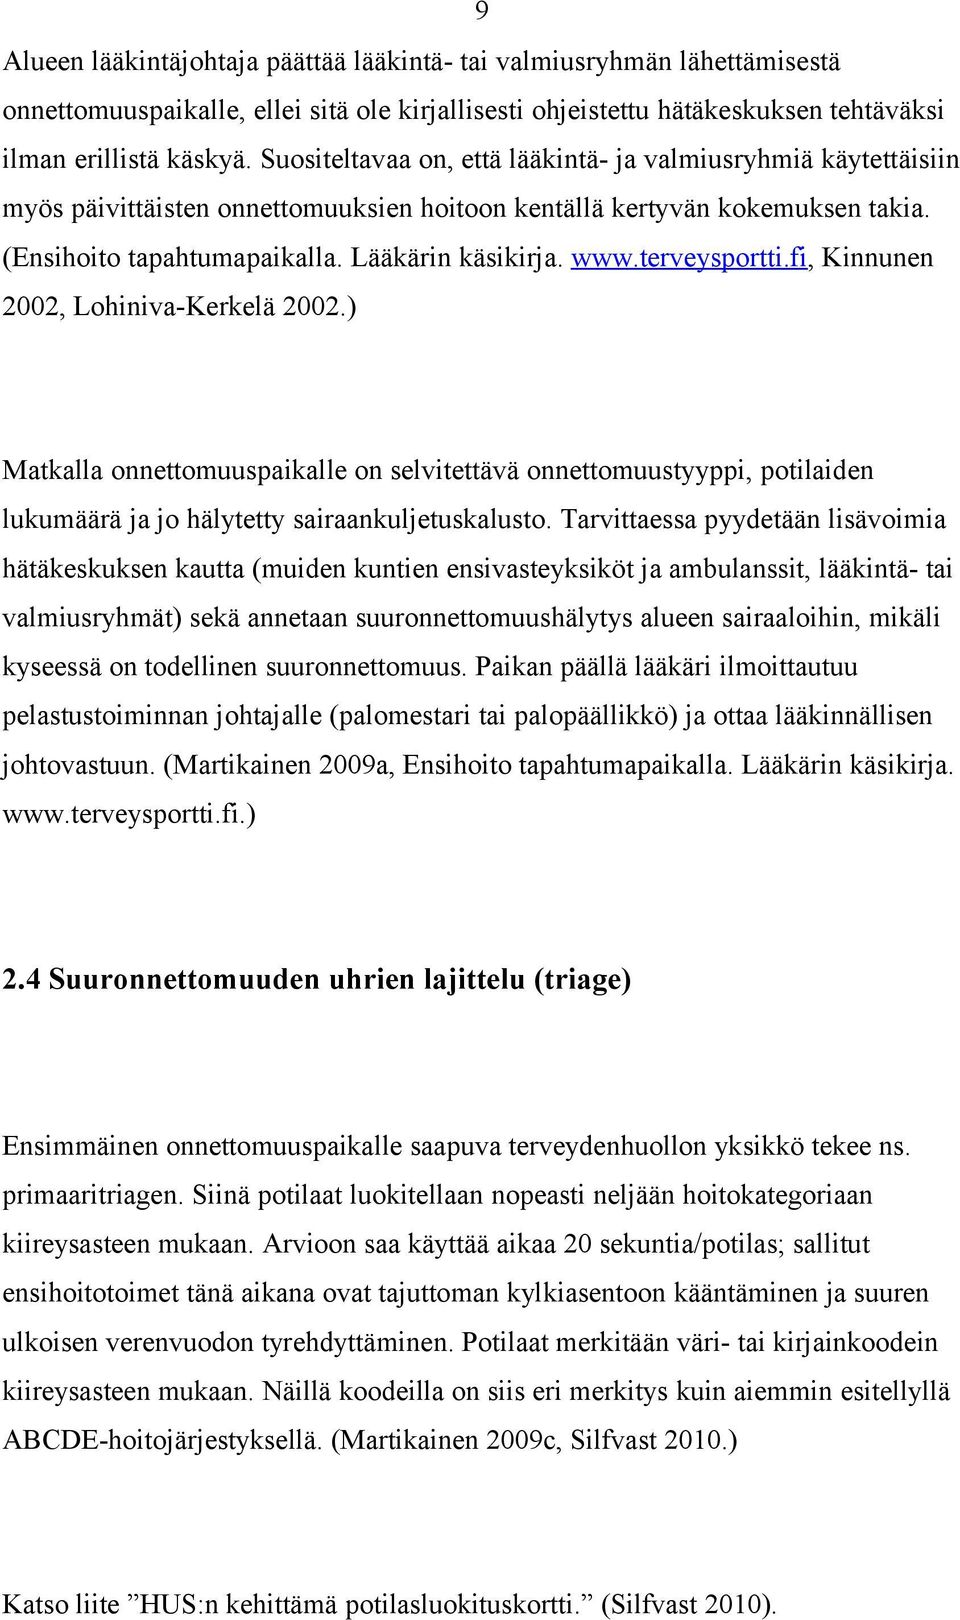 terveysportti.fi, Kinnunen 2002, Lohiniva-Kerkelä 2002.) Matkalla onnettomuuspaikalle on selvitettävä onnettomuustyyppi, potilaiden lukumäärä ja jo hälytetty sairaankuljetuskalusto.